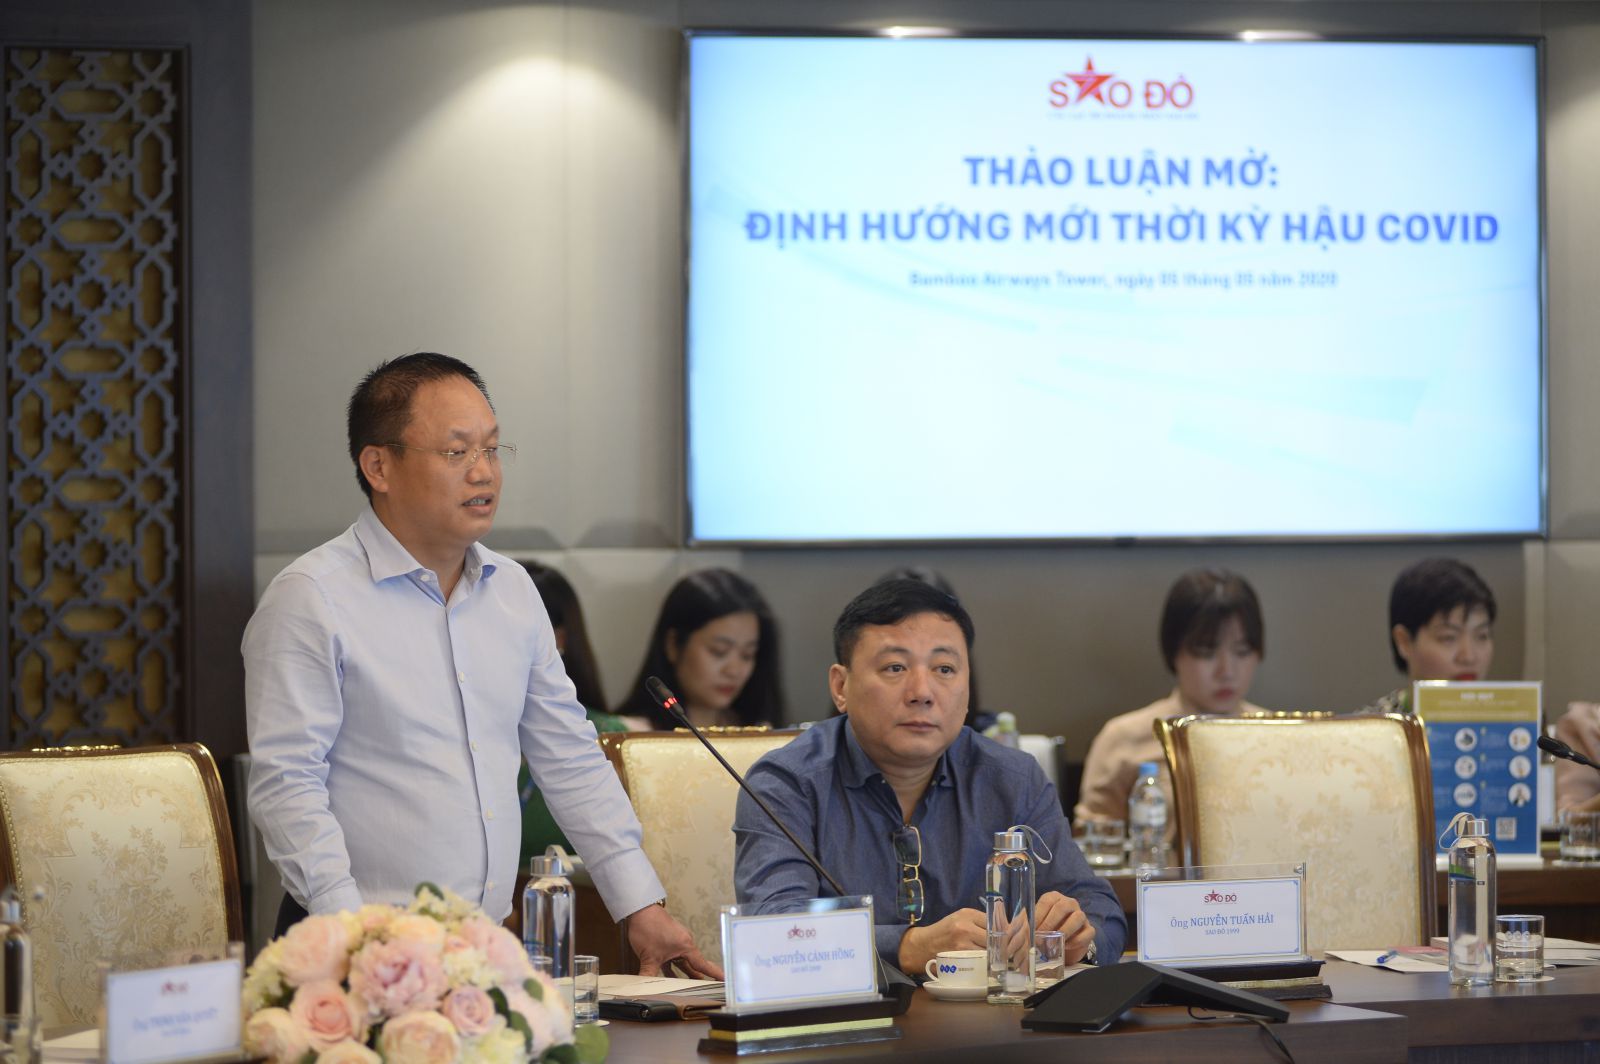 Ông Nguyễn Cảnh Hồng, Chủ tịch CLB Doanh nhân Sao Đỏ trao đổi với các thành viên trong CLB về định hướng mới thời kỳ hậu COVID